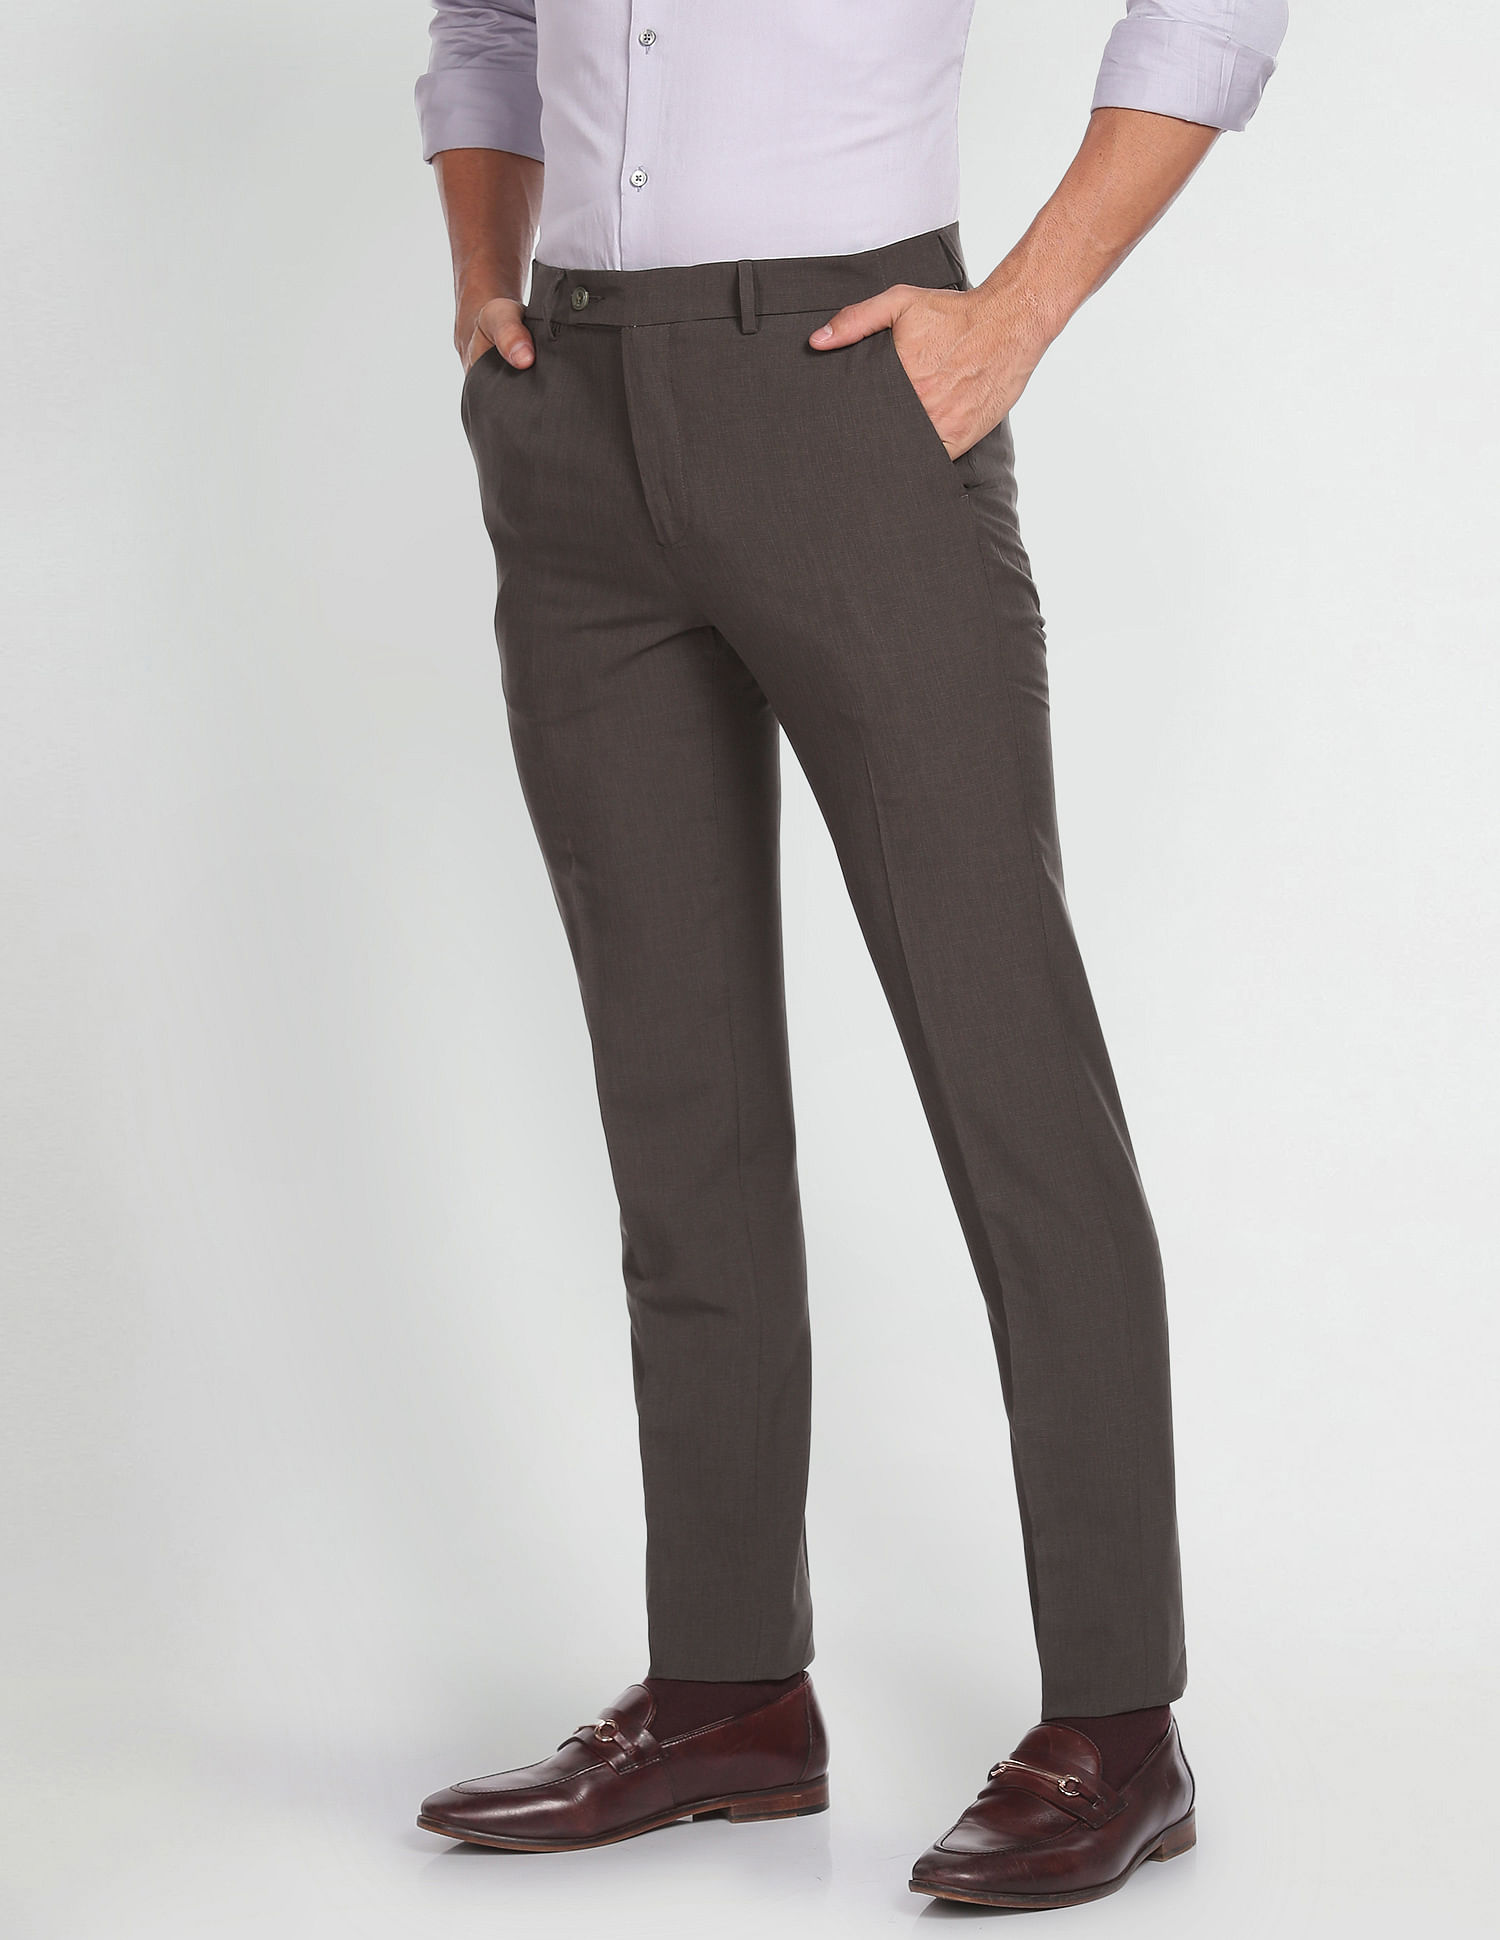 Arrow Smart Trousers - Buy Arrow Smart Trousers online in India